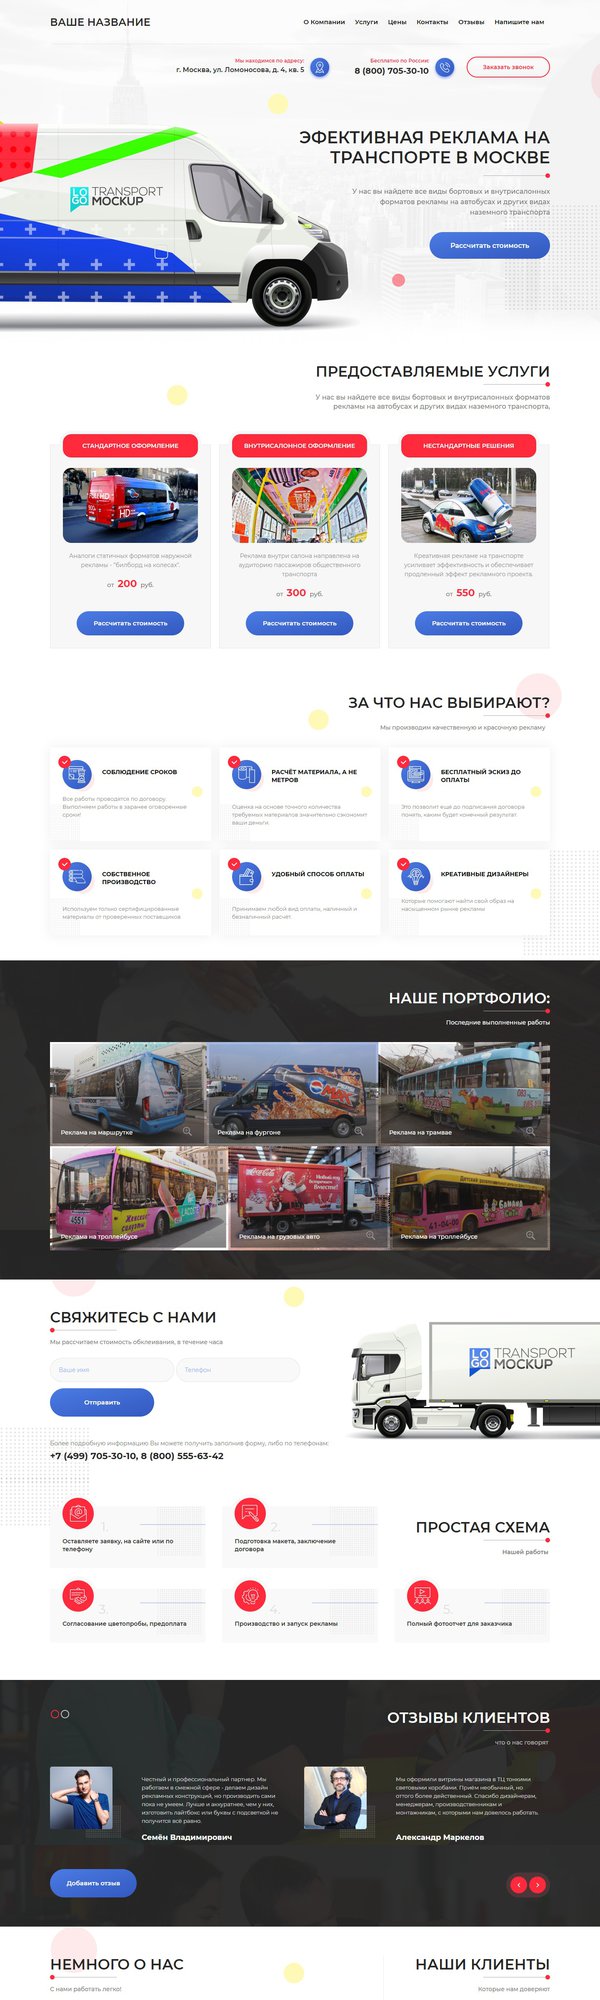 Готовый Сайт-Бизнес № 2243700 - Реклама на транспорте (Десктопная версия)